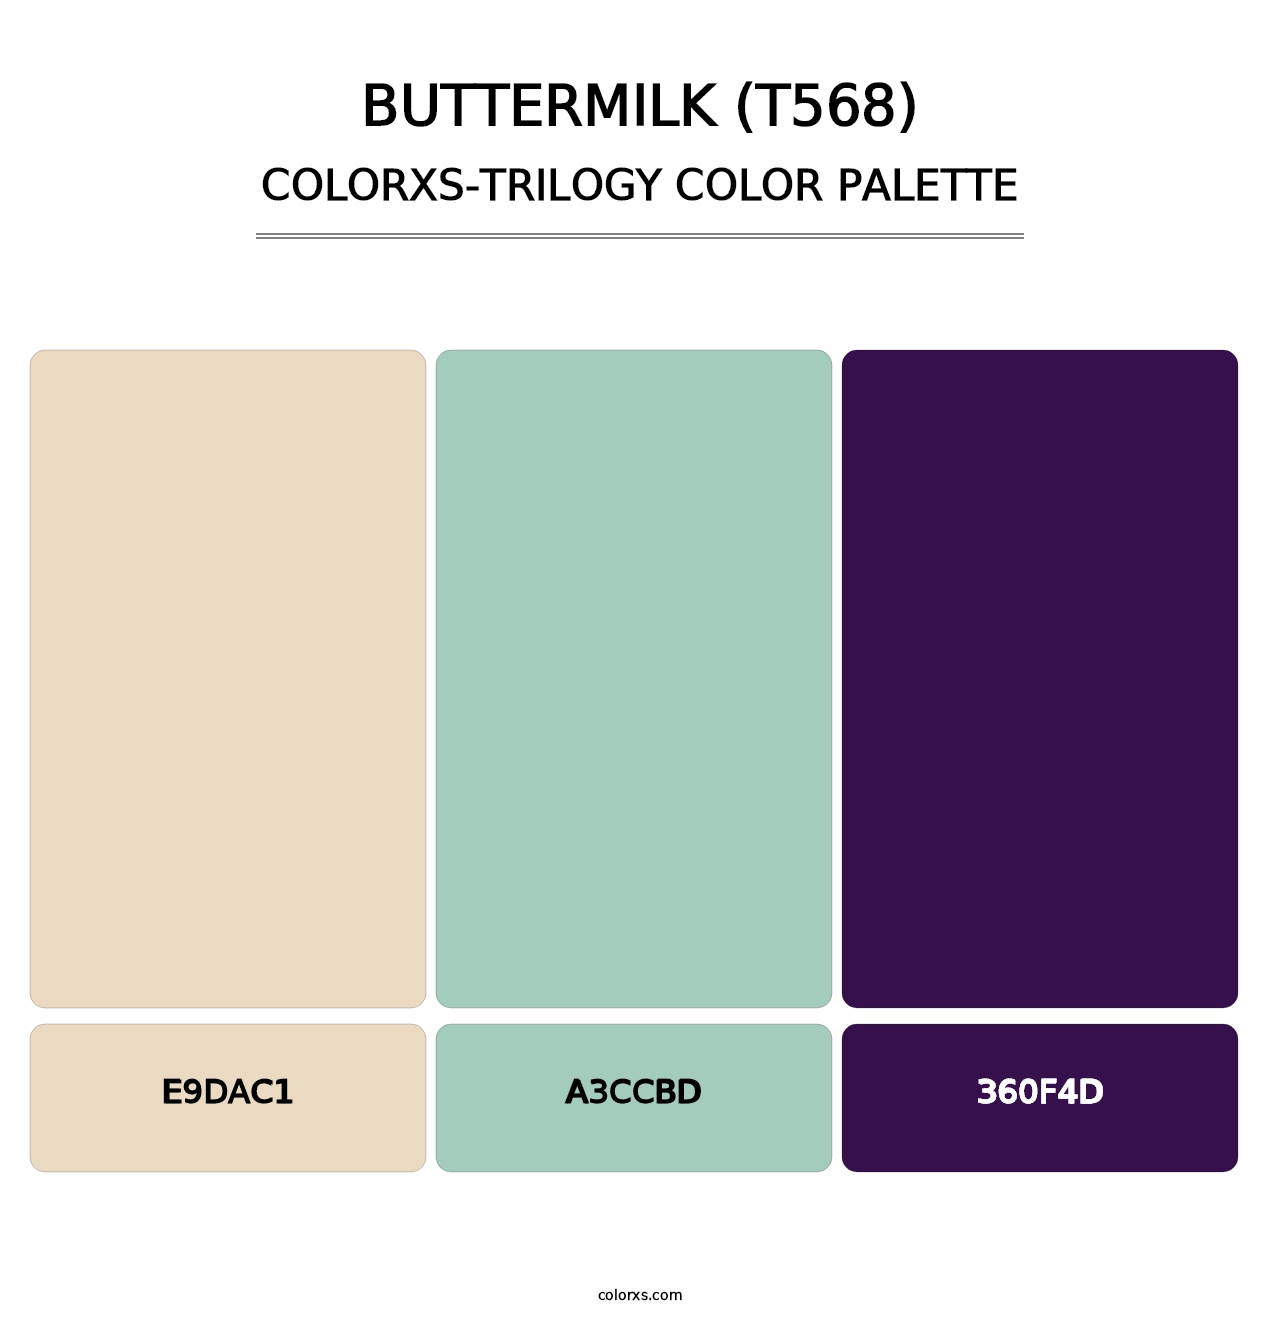 Buttermilk (T568) - Colorxs Trilogy Palette